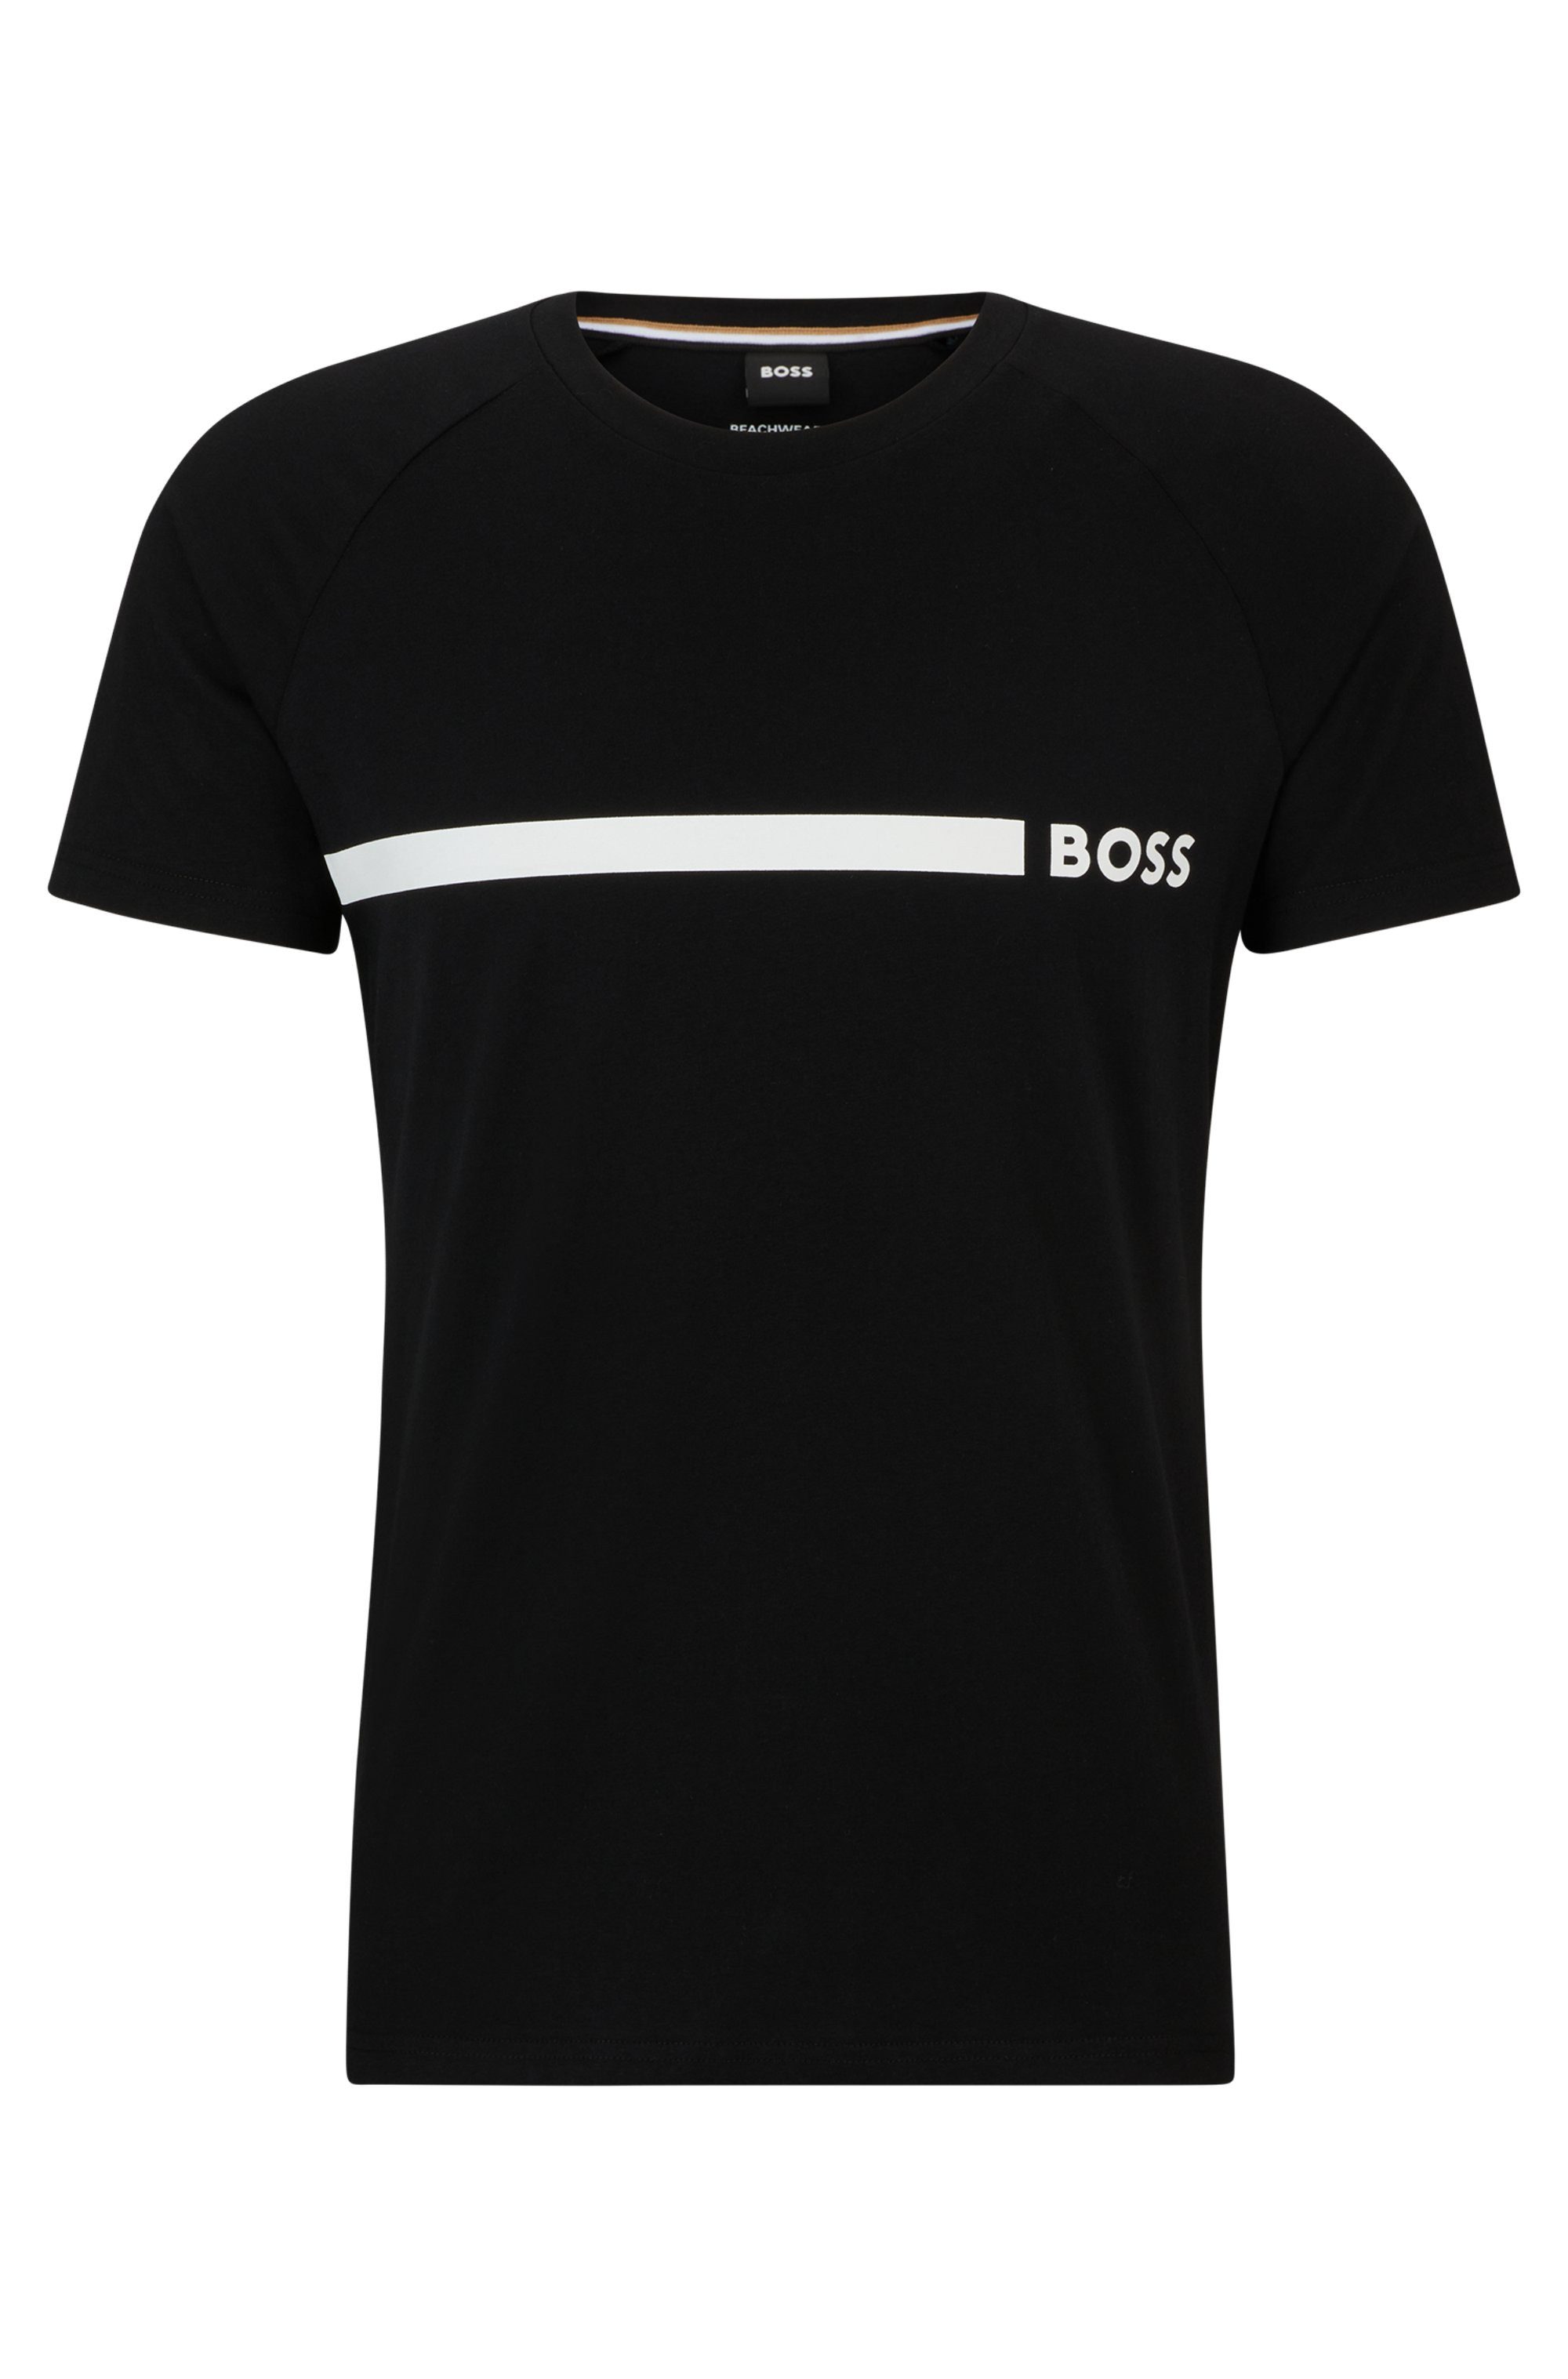 BOSS T-Shirt T-Shirt RN Slim Fit mit BOSS Logoschriftzug, Rundhals